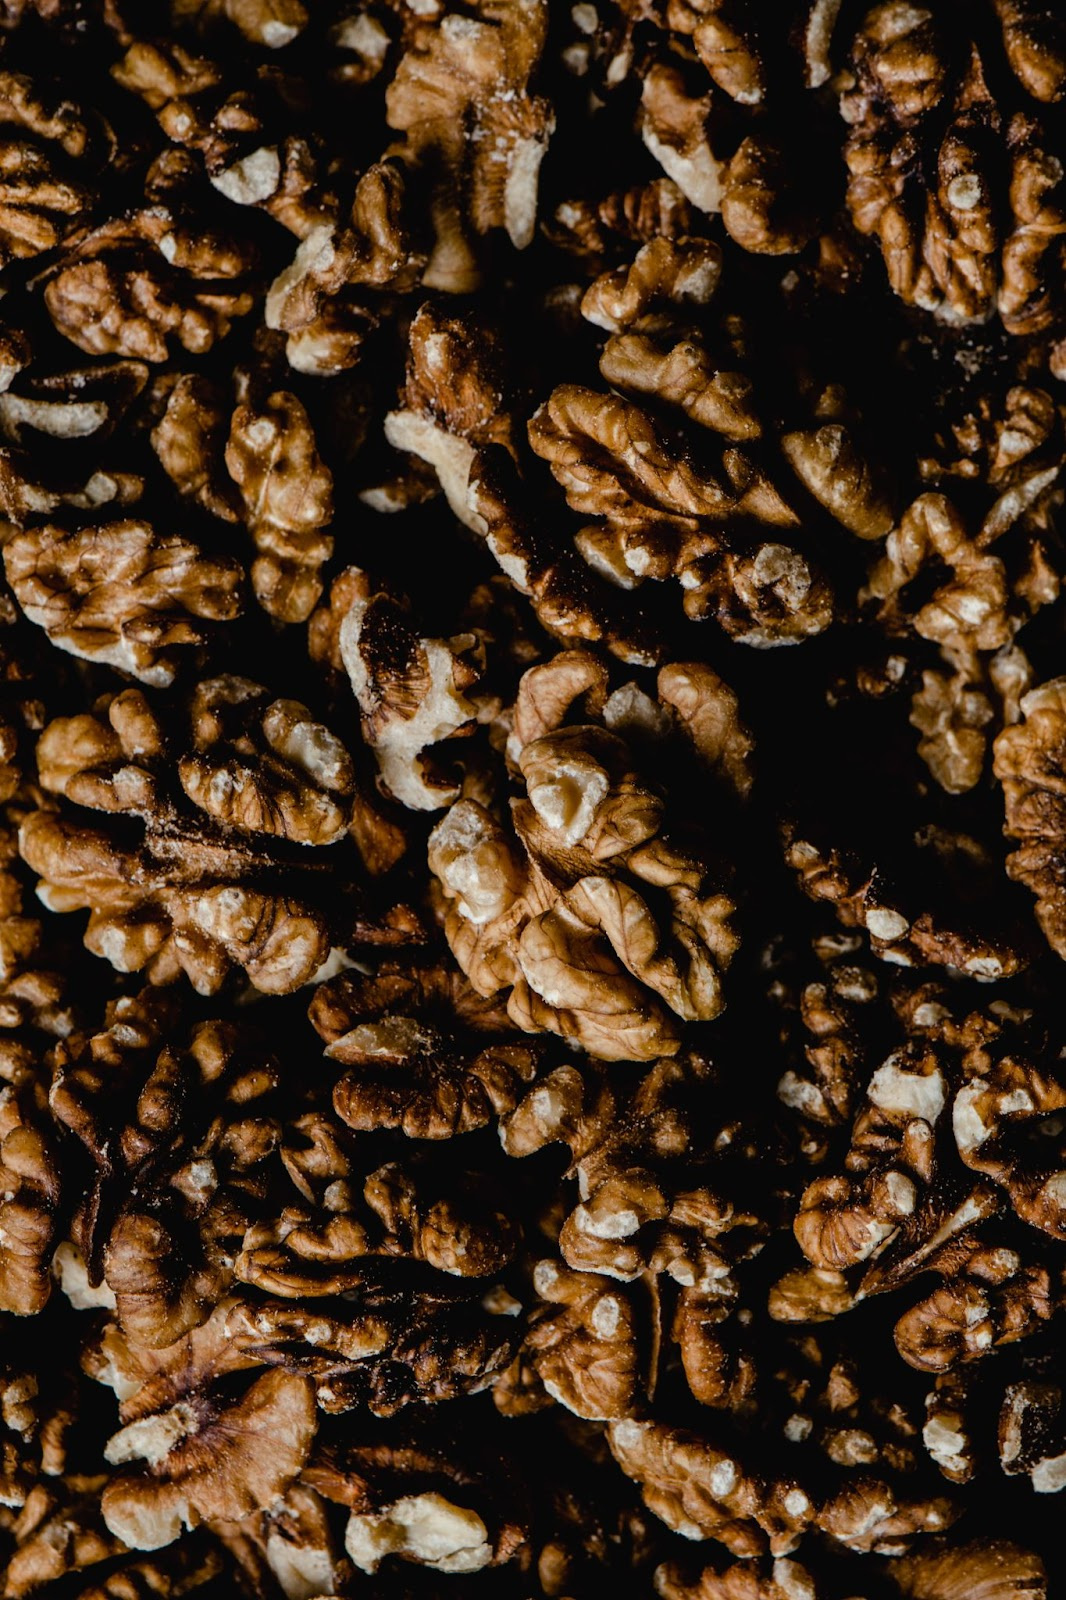 15 benefits of walnuts